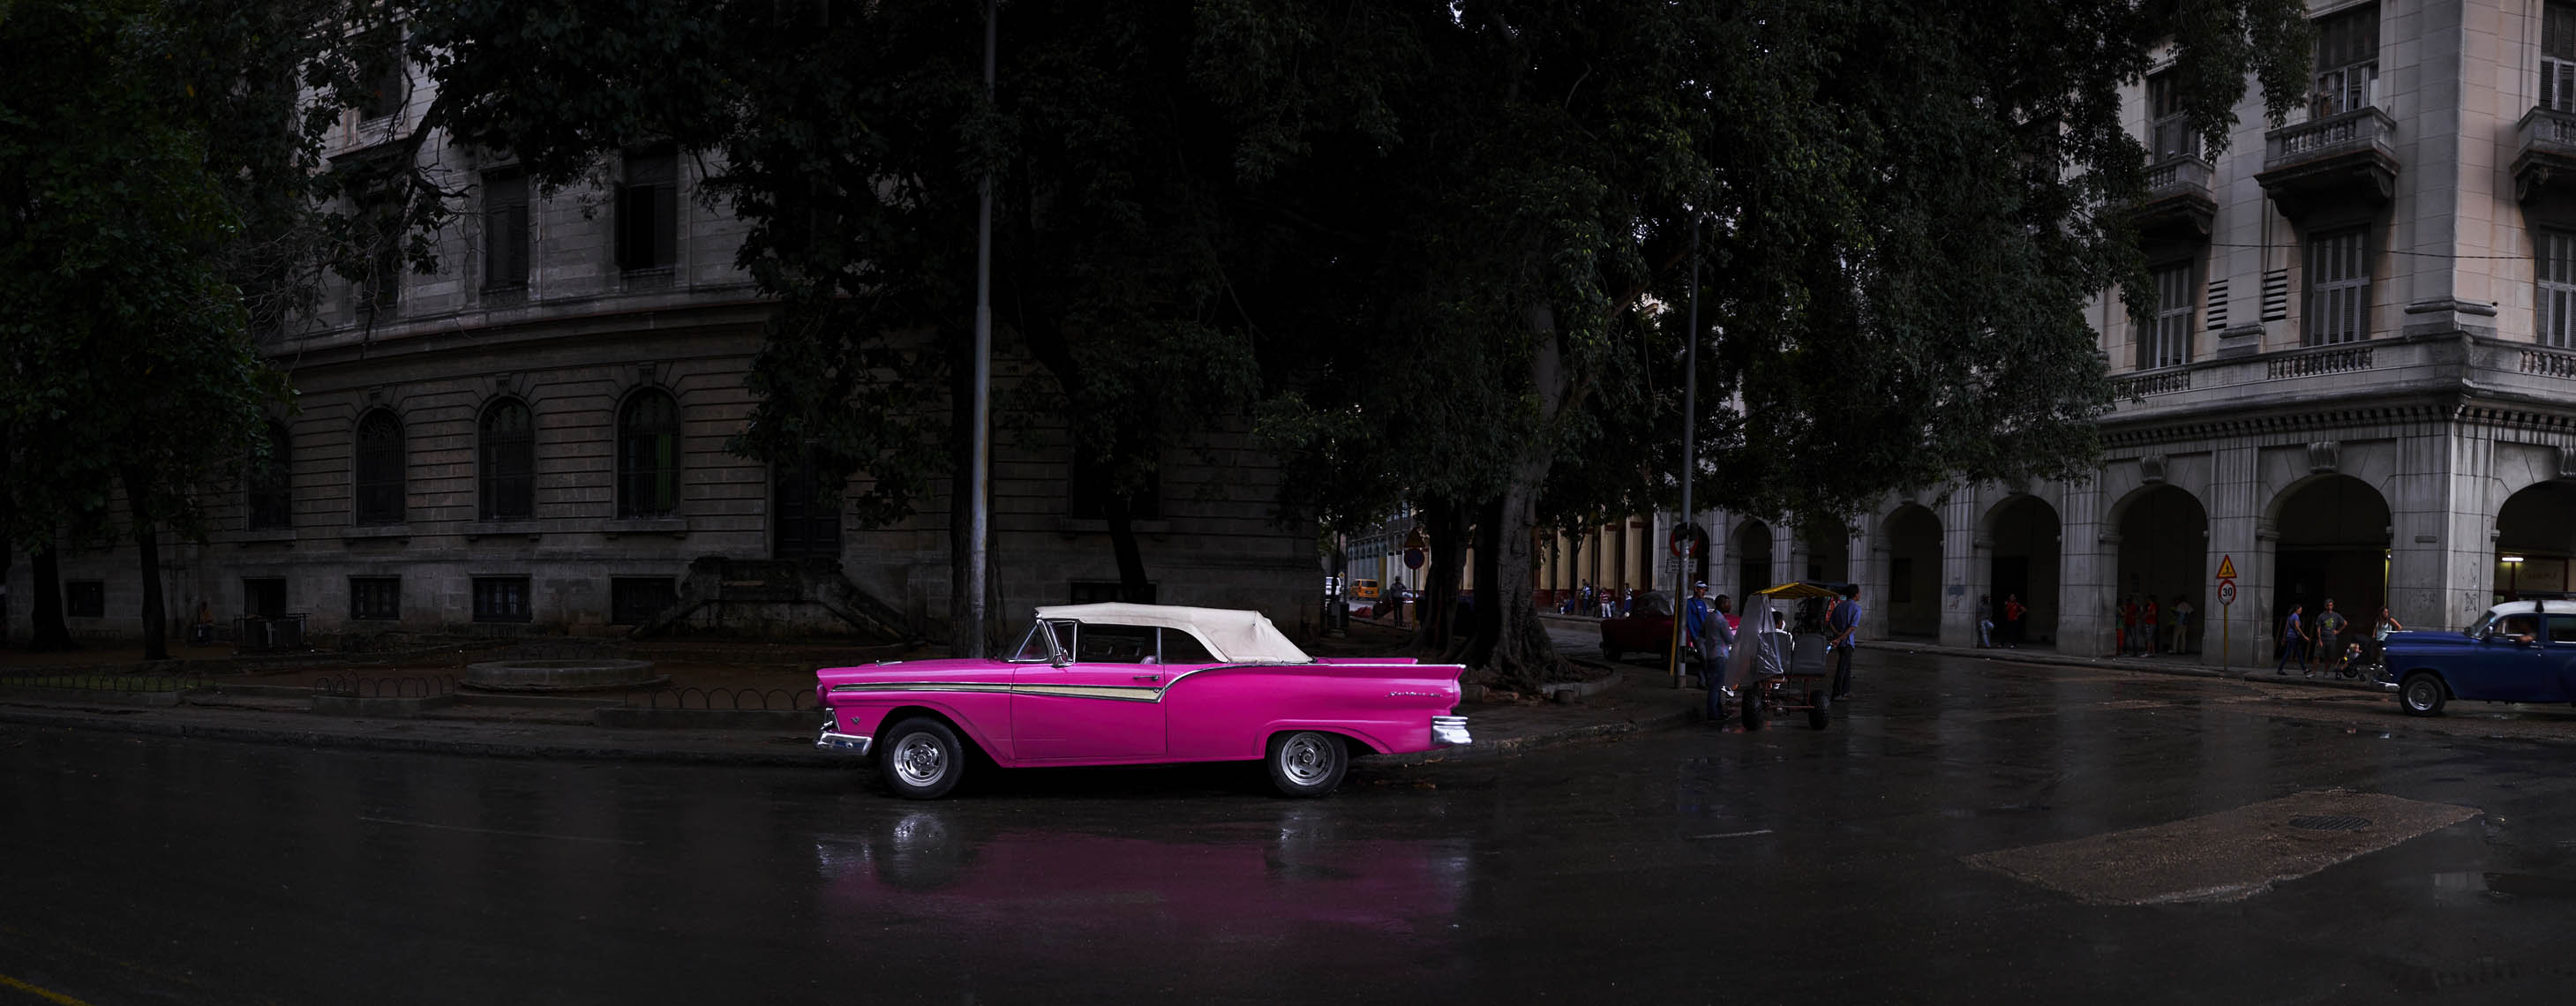 Pink Car Cuba_Panorama1